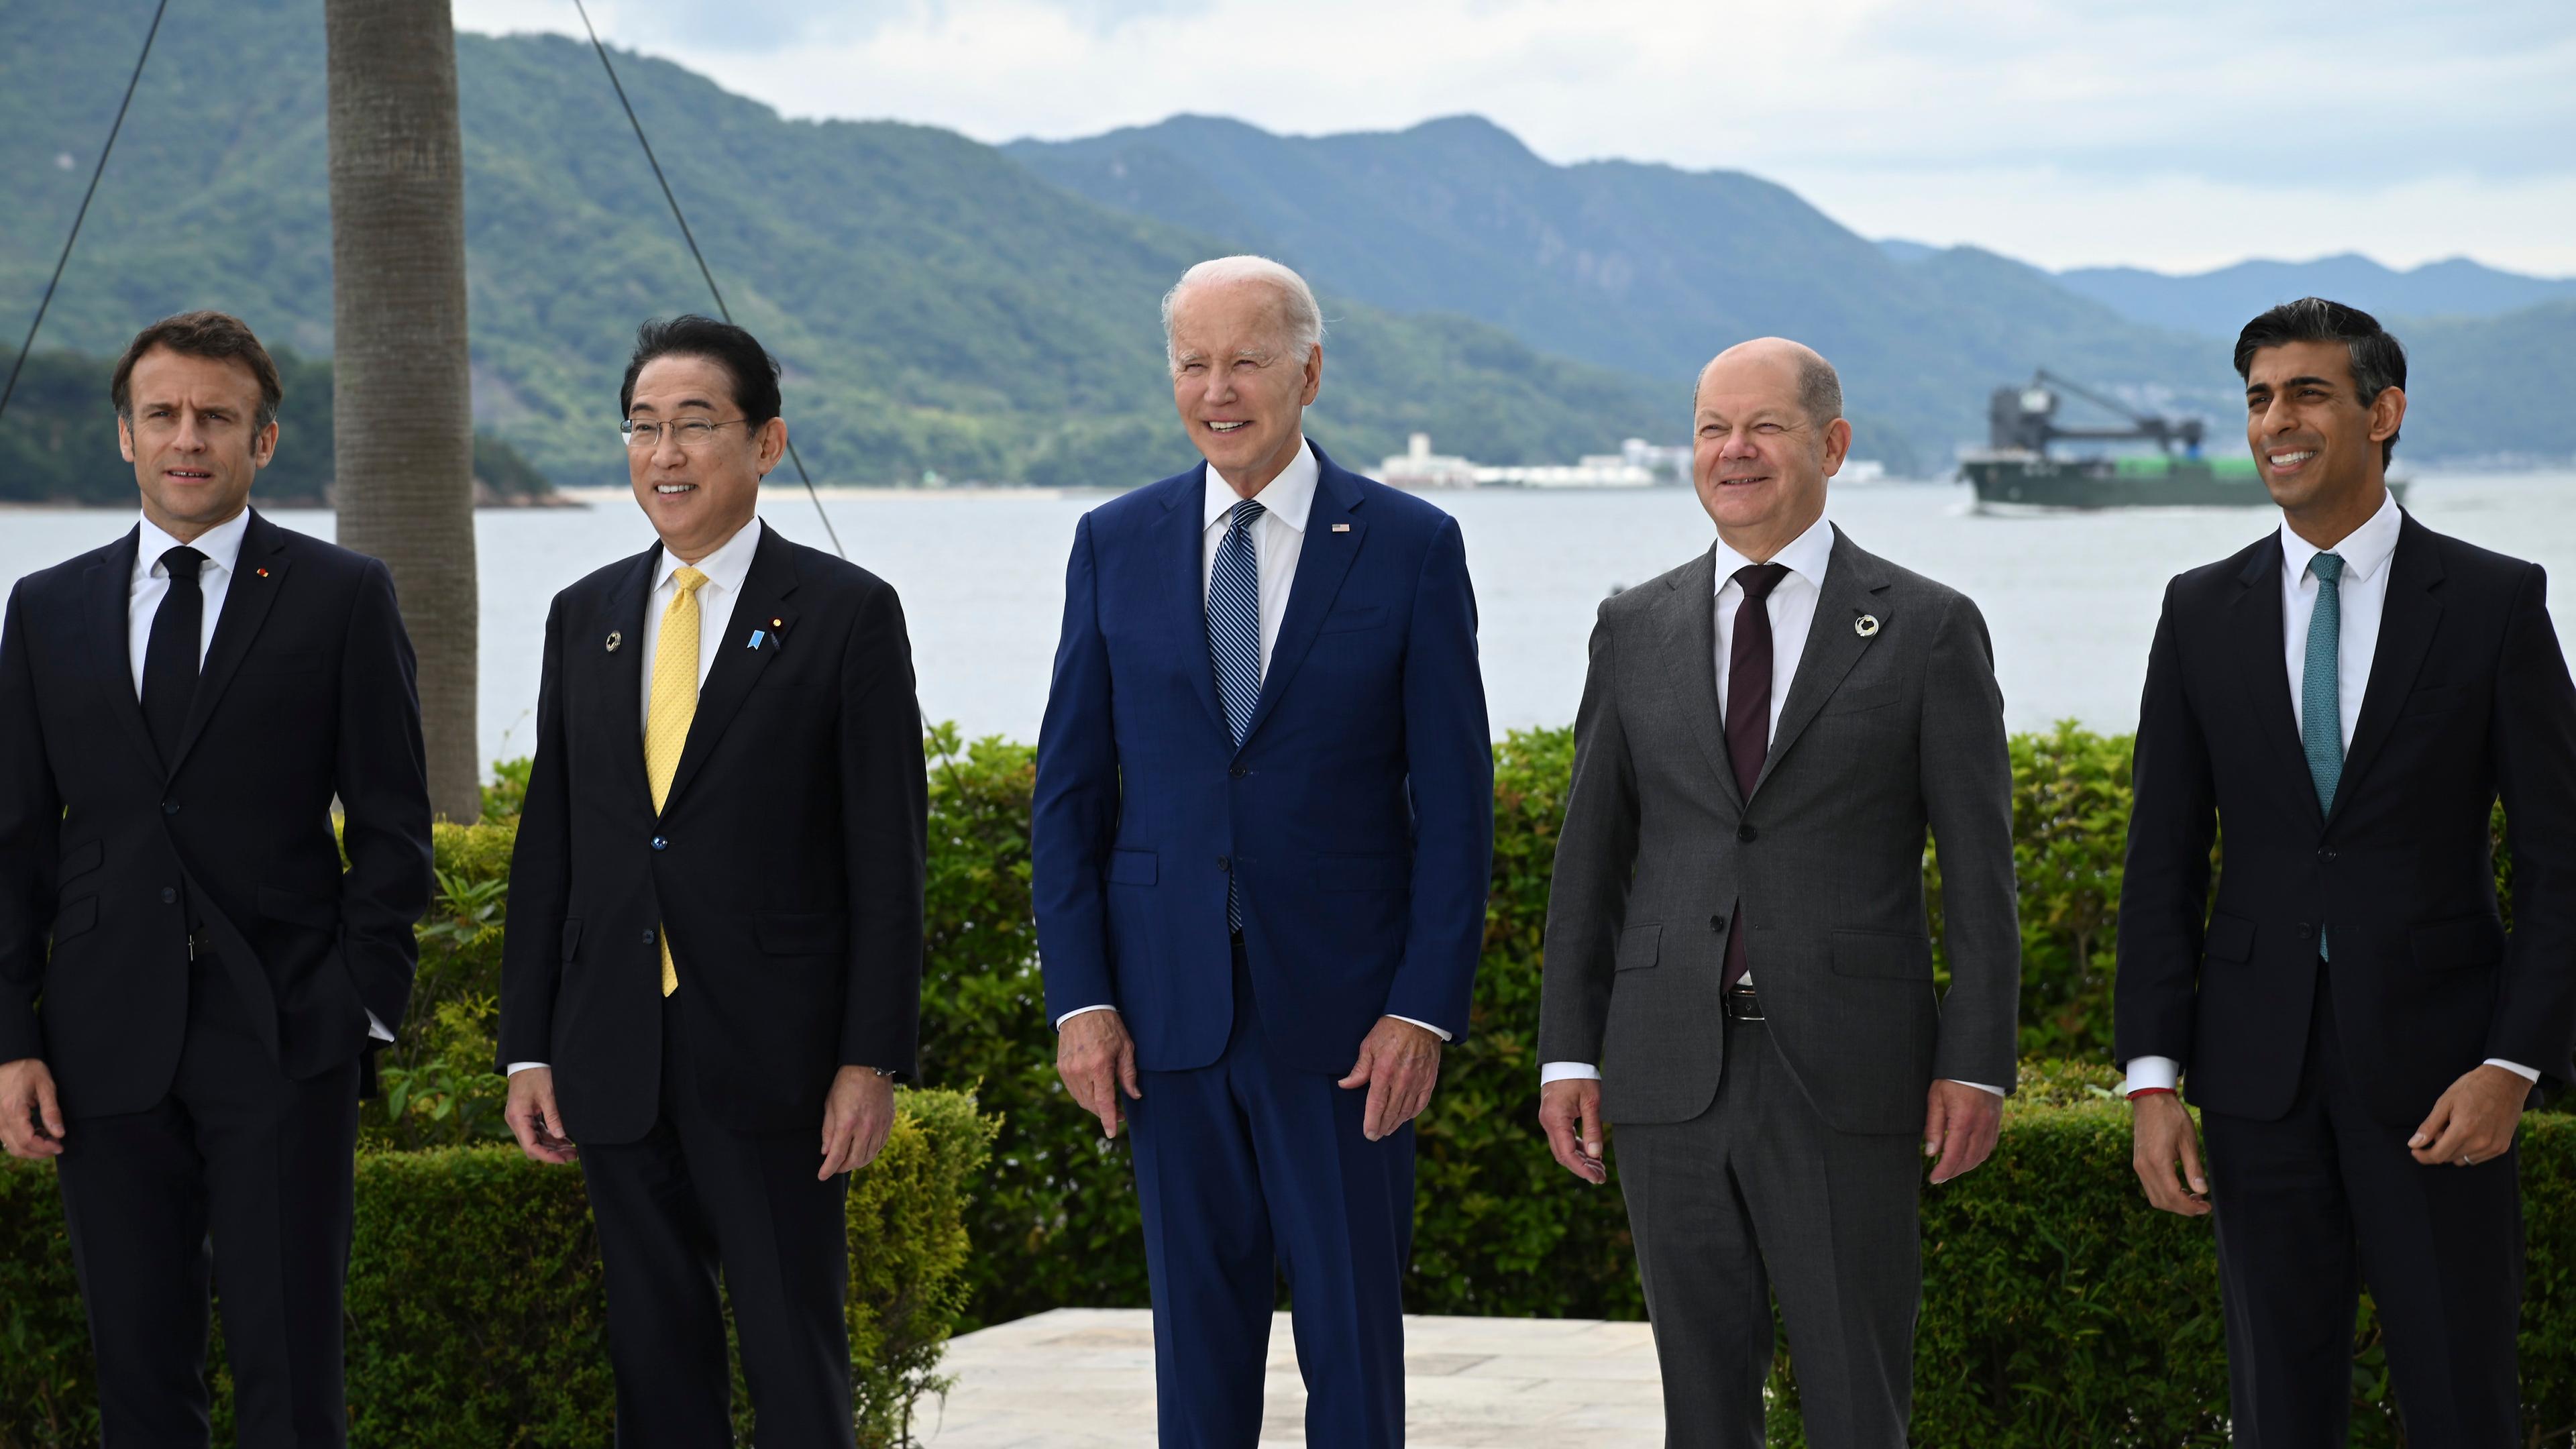 Emmanuel Macron, Präsident von Frankreich, Fumio Kishida, Ministerpräsident von Japan, Joe Biden, Präsident der USA, Bundeskanzler Olaf Scholz (SPD), und Rishi Sunak, Premierminister von Großbritannien, in einer Reihe.